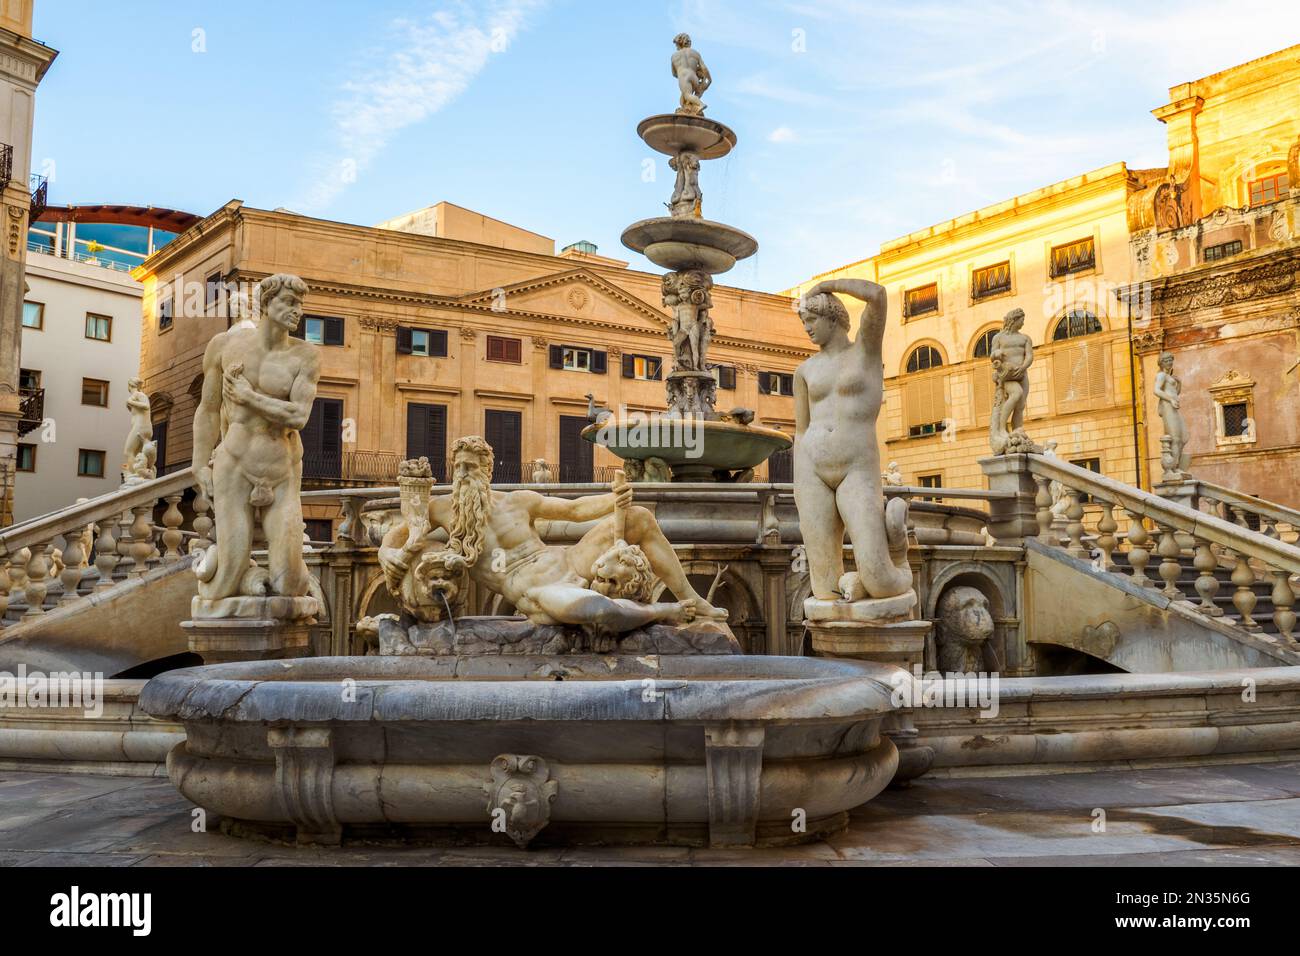 Fontana Pretoria (Fontaine prétorienne) est une fontaine monumentale située sur la Piazza Pretoria, dans le centre historique de Palerme. La fontaine a été construite en 1544 à Florence par Francesco Camilliani, mais elle a été vendue, transférée et réassemblée à Palerme en 1574. -Sicile, Italie Banque D'Images